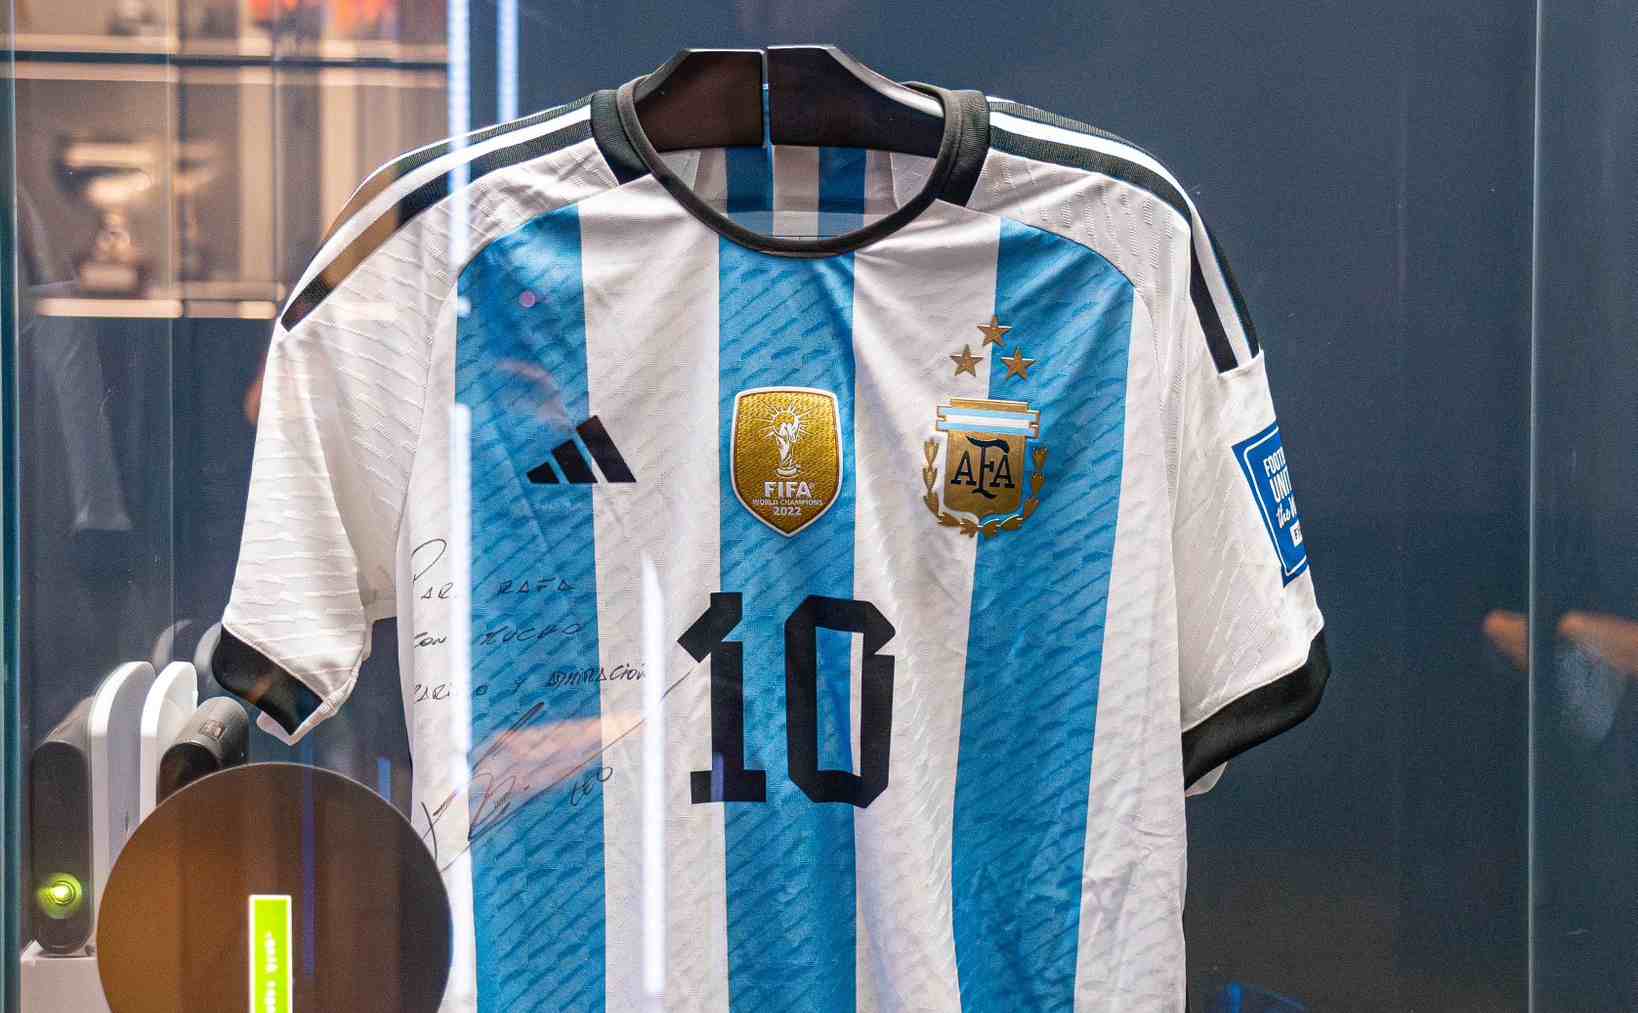 Camiseta de Messi con la que ganó el mundial de Qatar, que ha regalado a Rafa Nadal. RAFA NADAL ACADEMY BY MOVISTAR